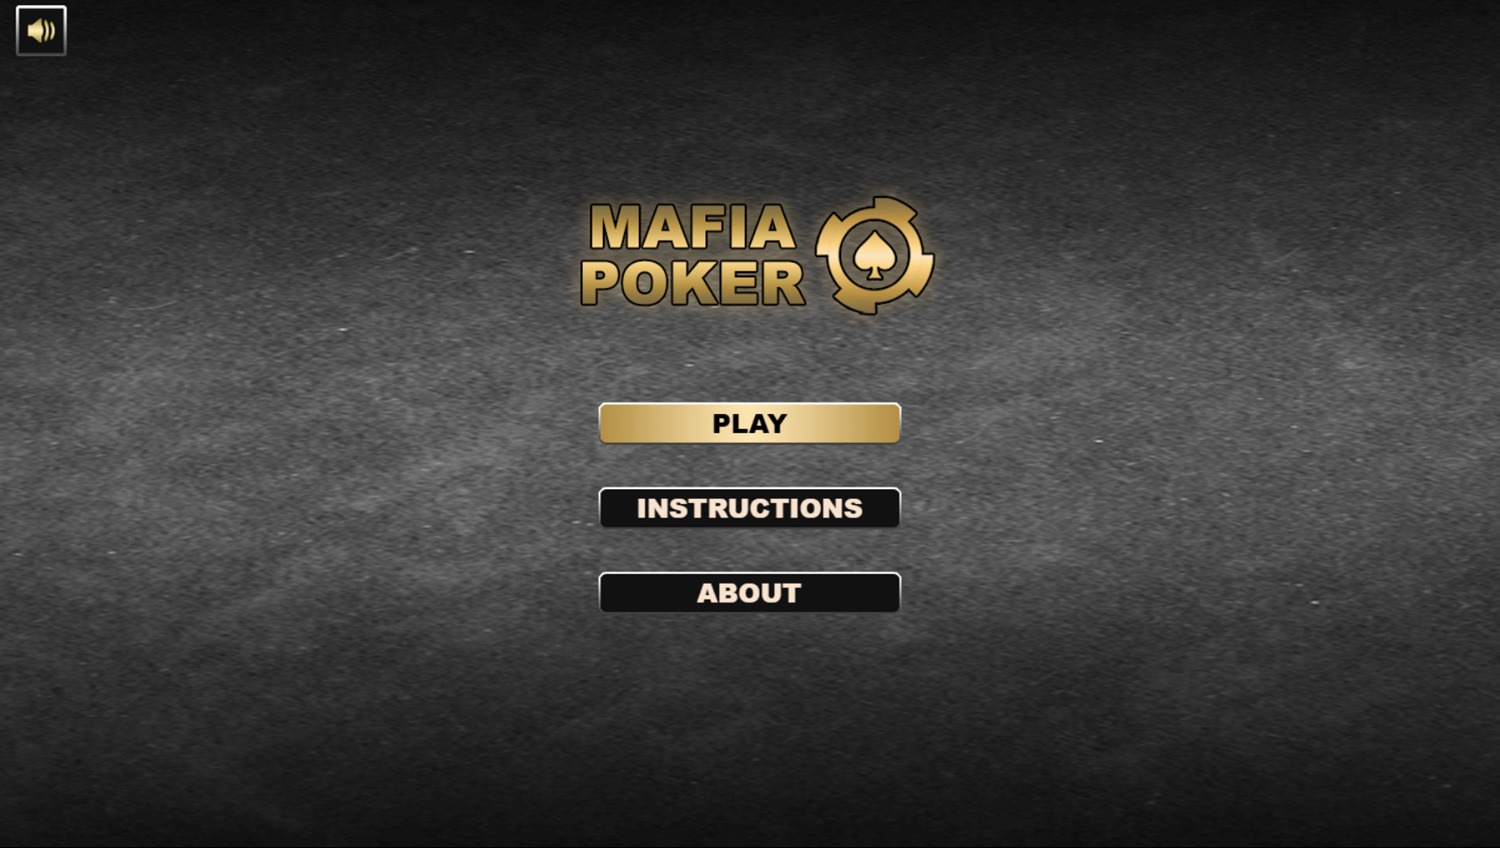 Mafia Poker Game Welcome Screen Screenshot.